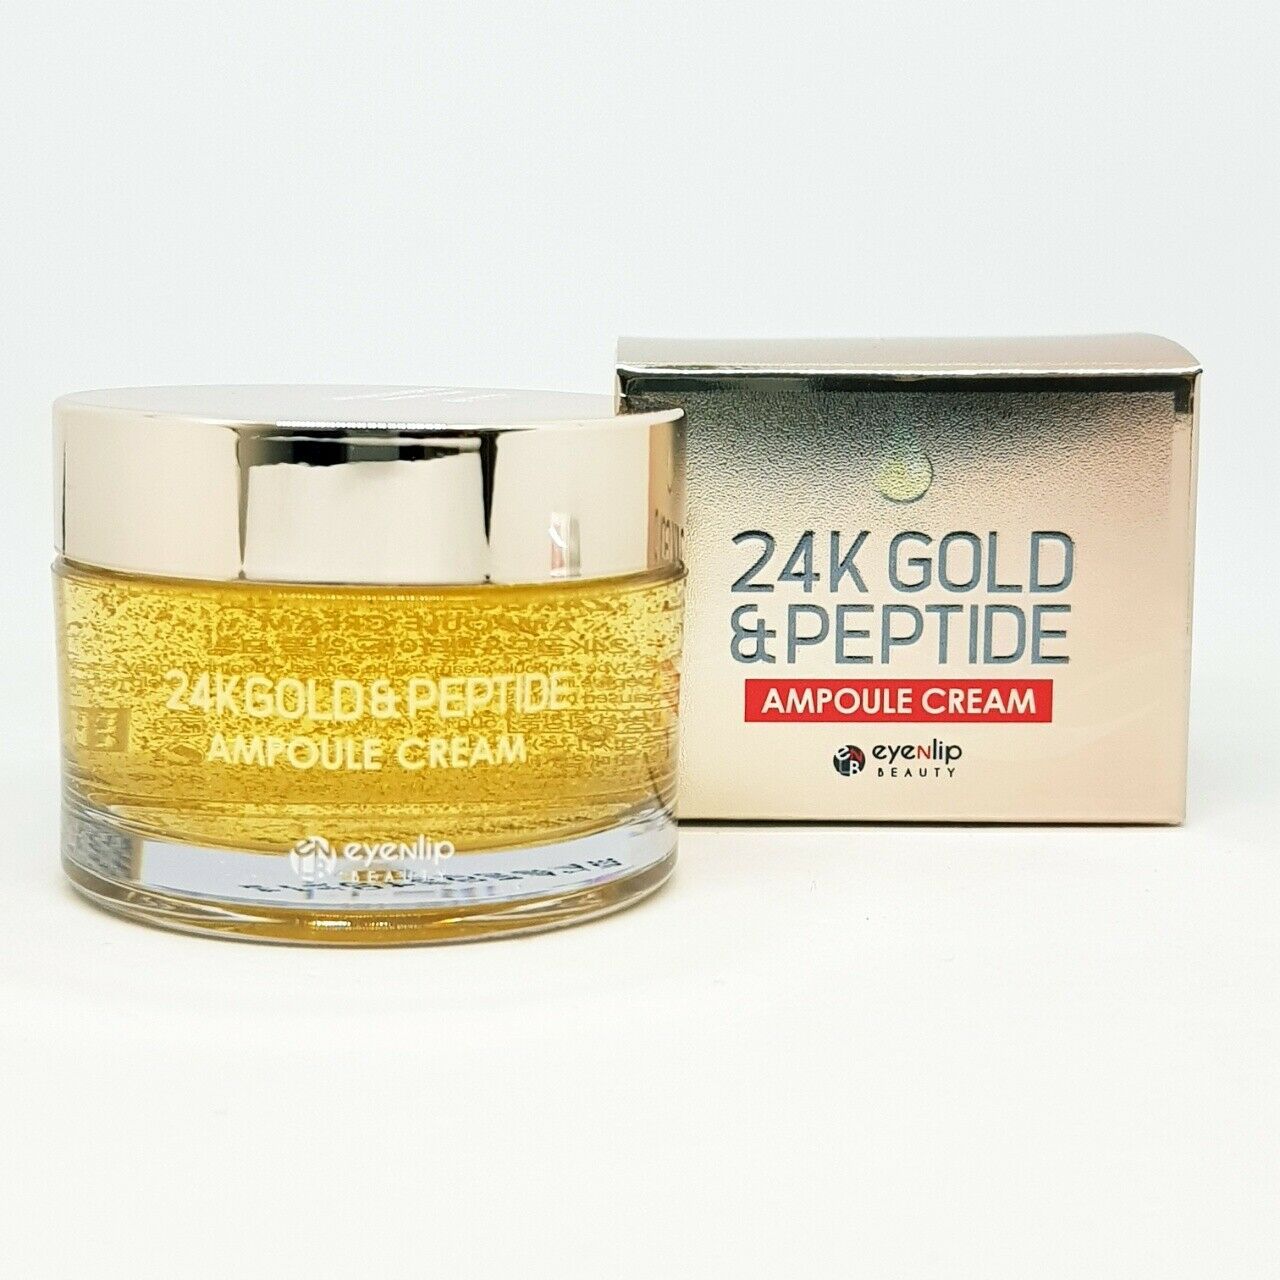 Eyenlip 24K Gold & Peptide Ampoule Cream 50g Whitening Anti Wrinkle K-Beauty